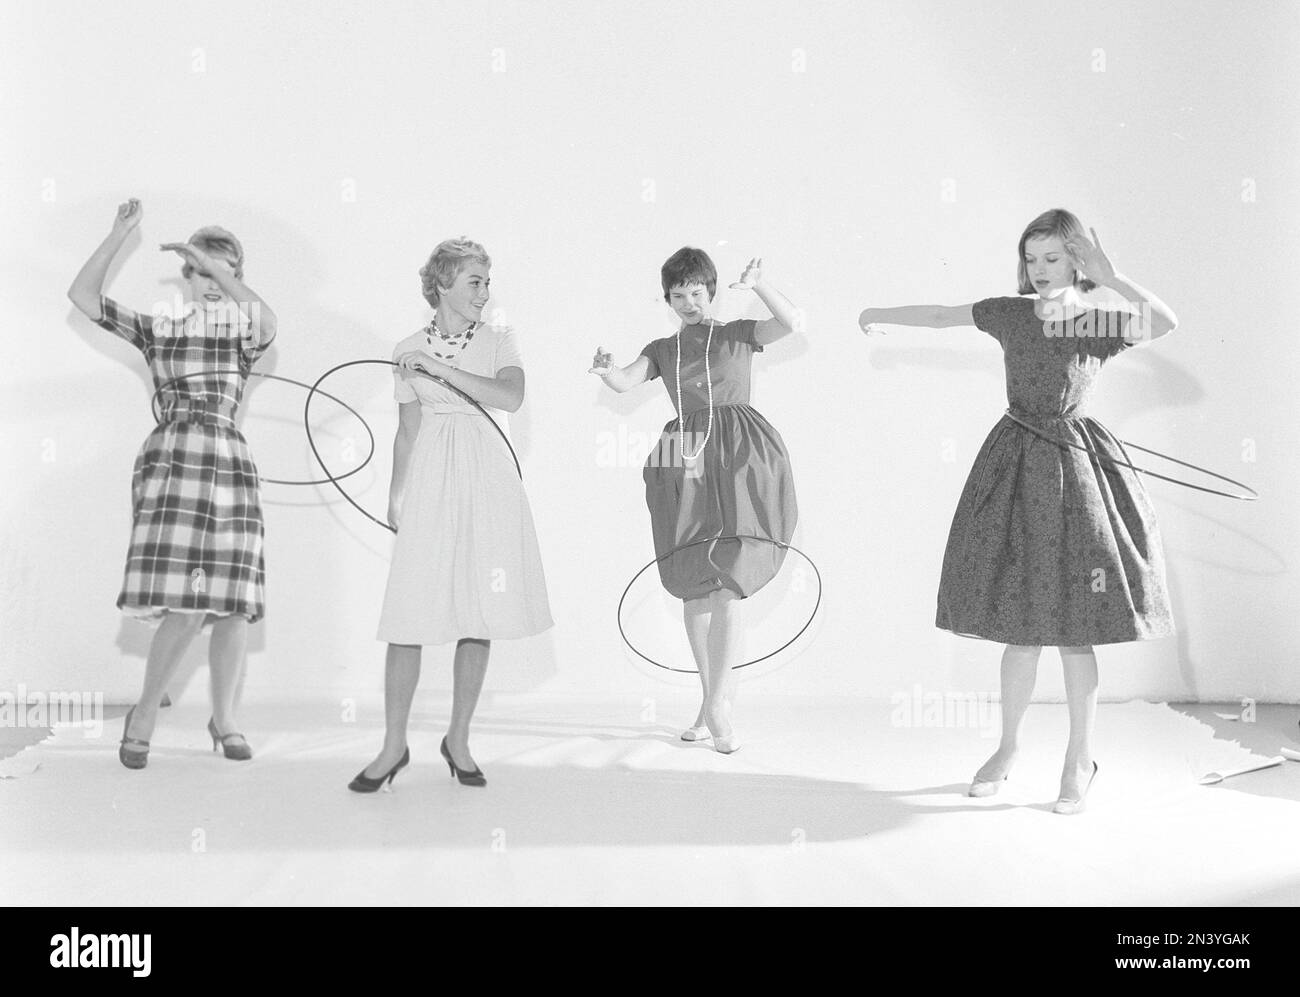 Dans le 1950s. Hula boucle pour femmes. Une folie qui a culminé en 1958 avec quelque 20 millions de bagues de hula vendues en moins de quatre mois aux États-Unis. Suède 1958 réf. BV18-5 Banque D'Images